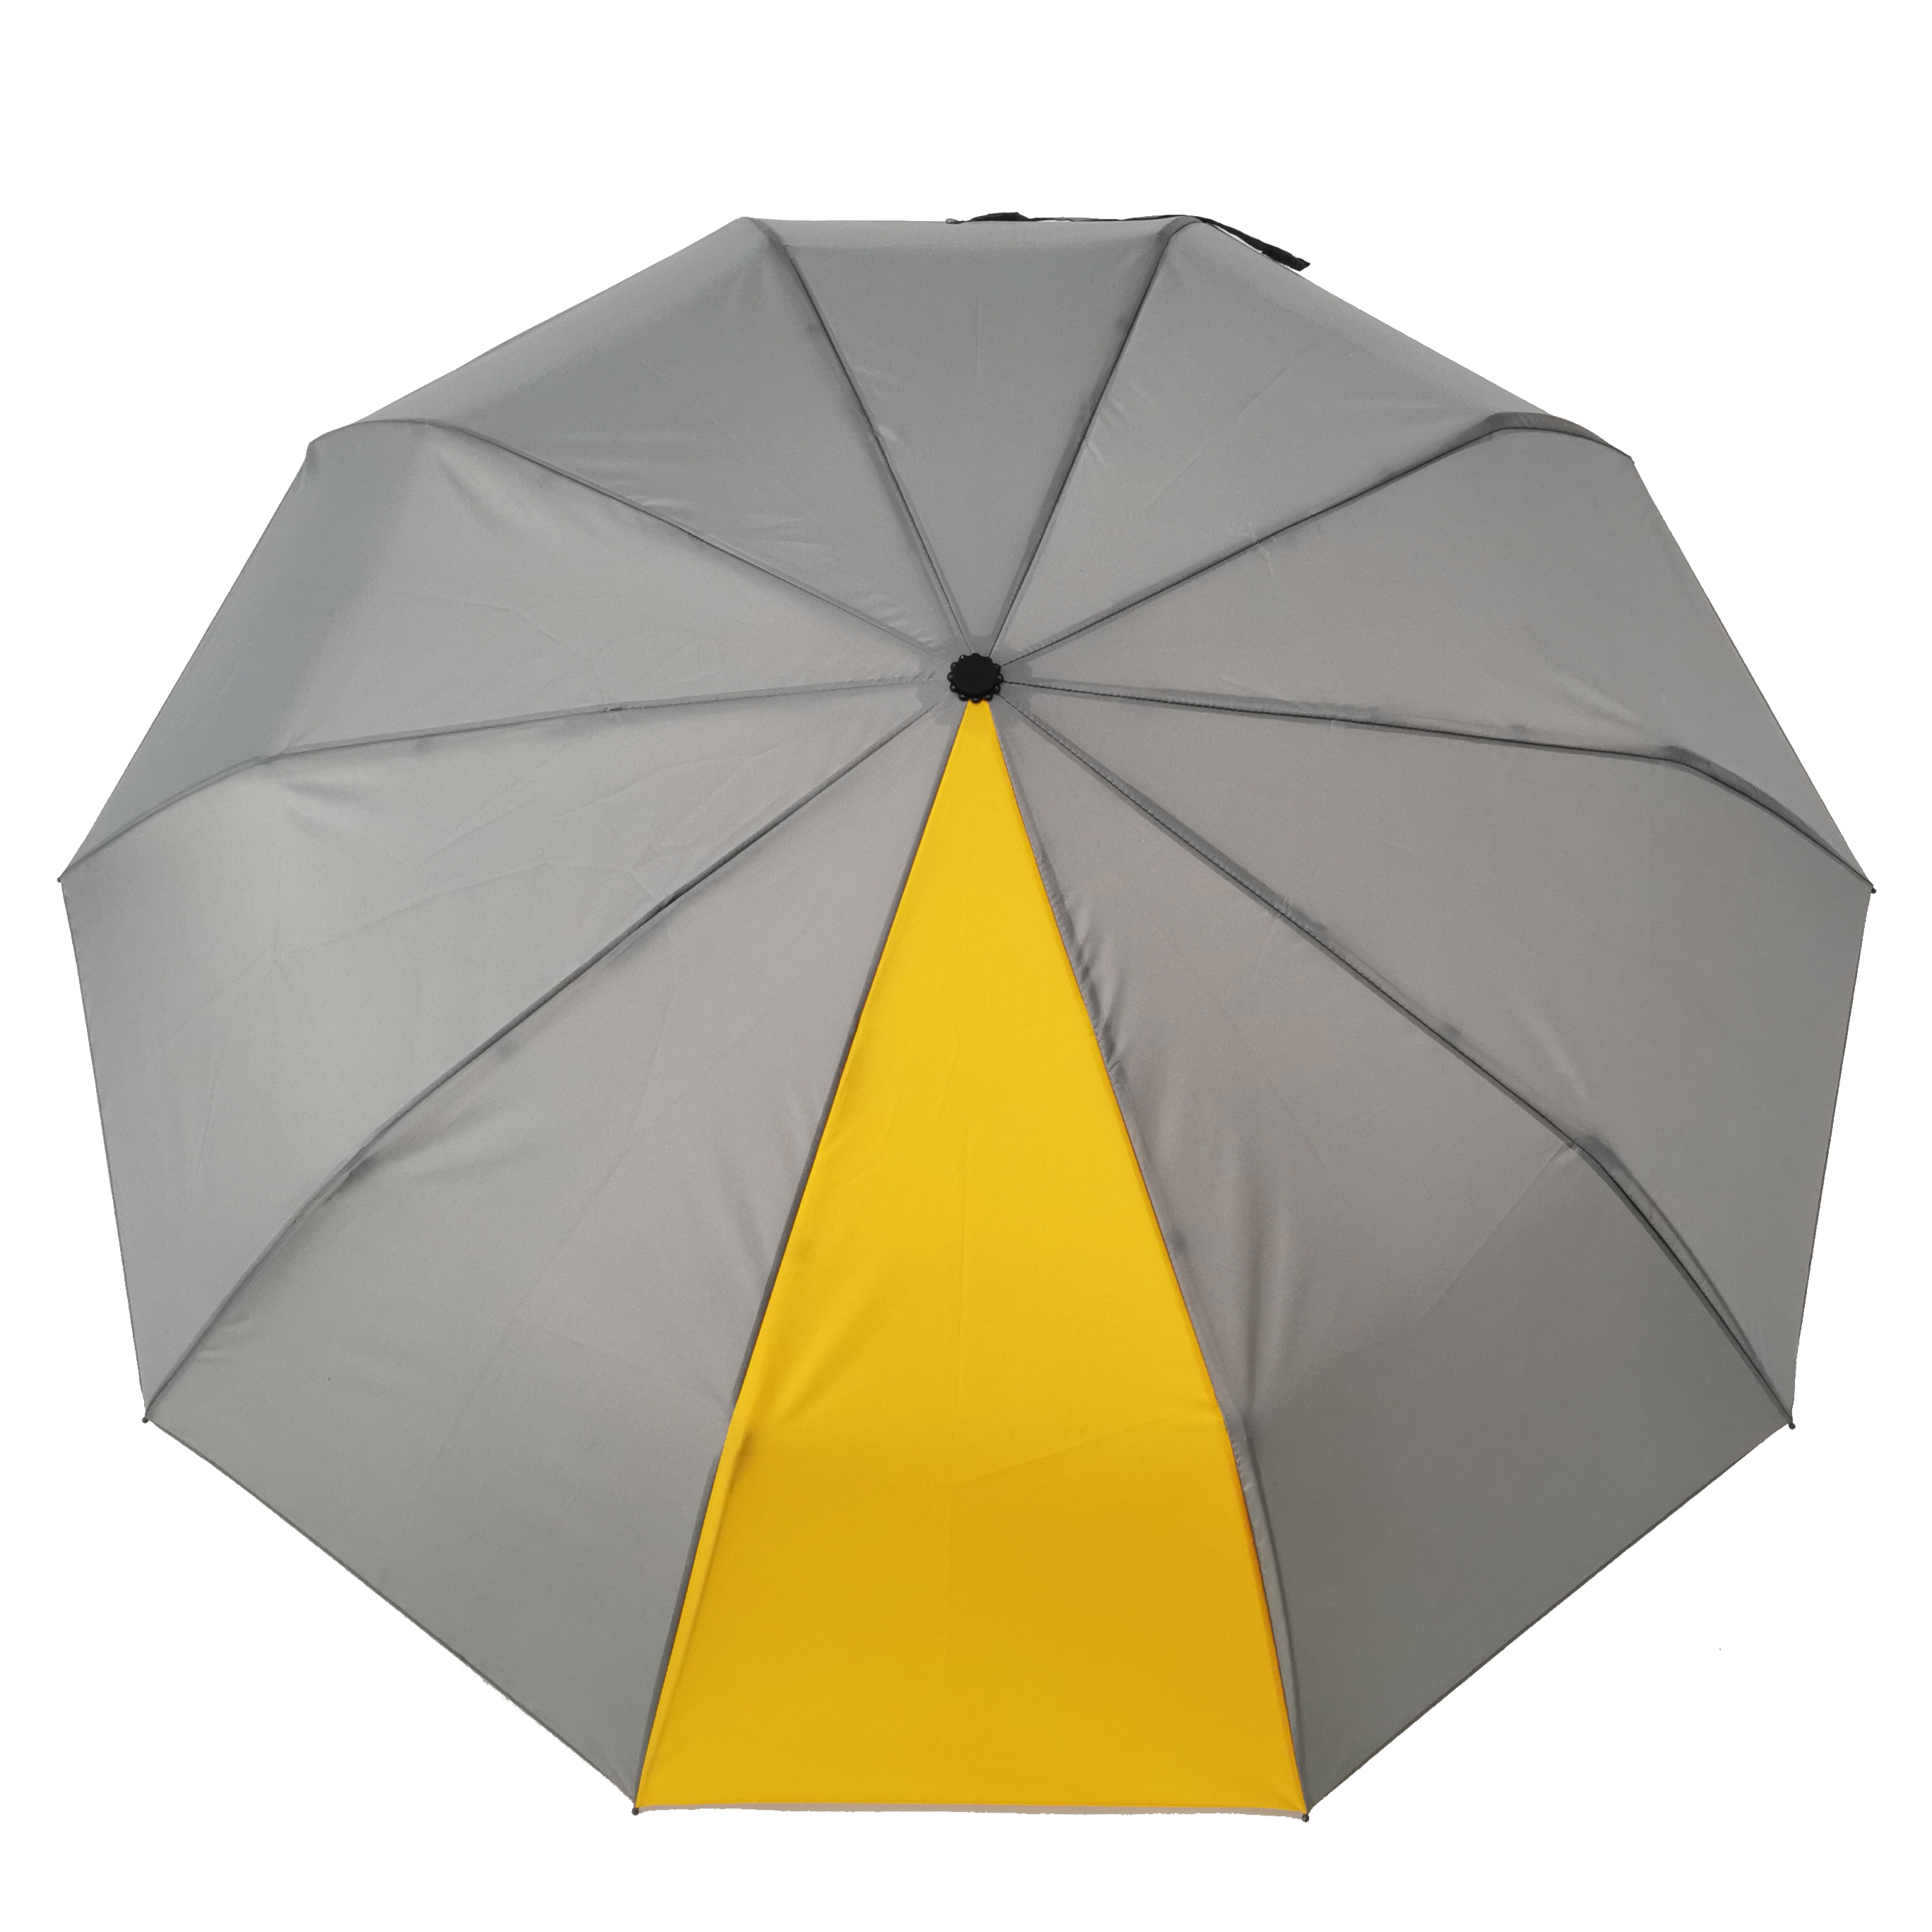 rpet umbrella pārstrādāts lietussargs ar pielāgotu logotipu